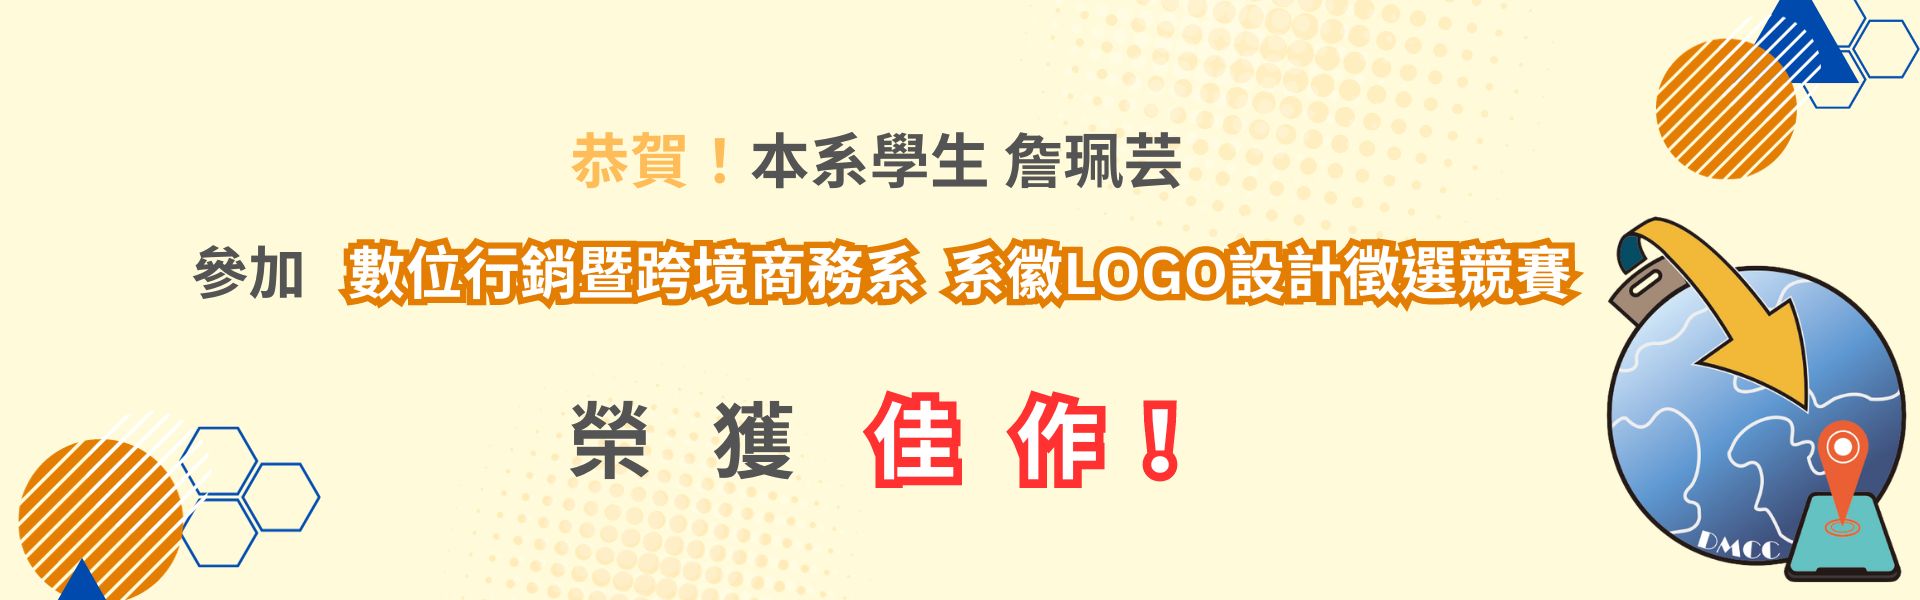 數位行銷暨跨境商務系  系徽LOGO設計徵選競賽 佳作